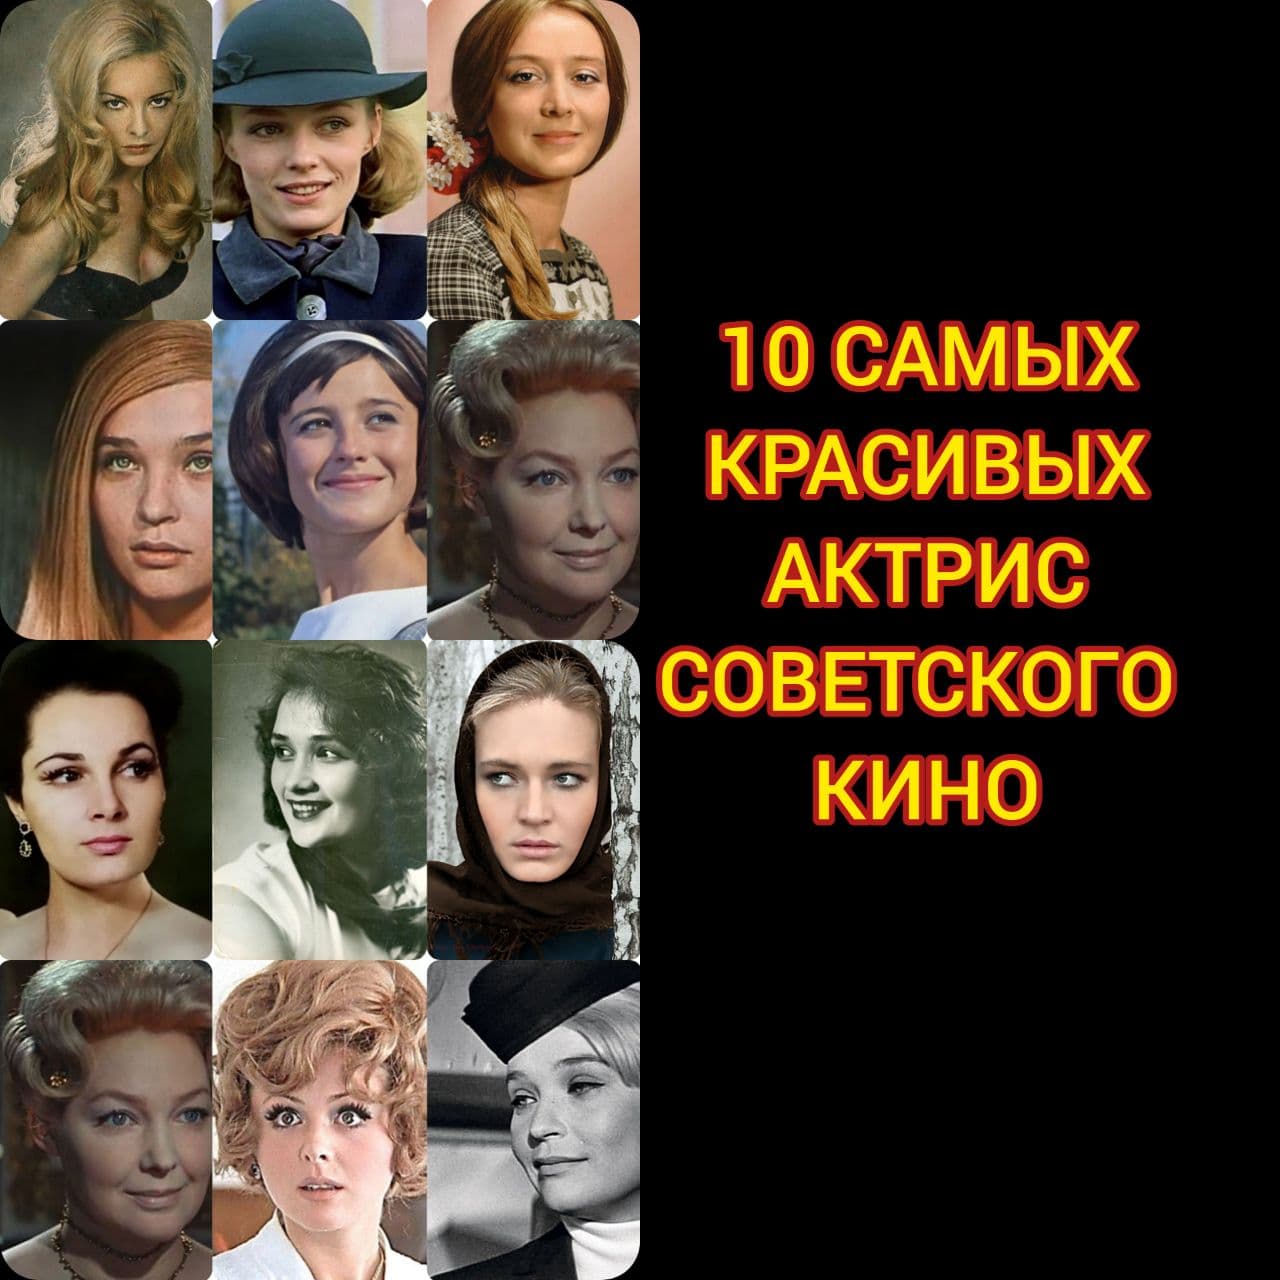 10 самых красивых актрис советского кино!